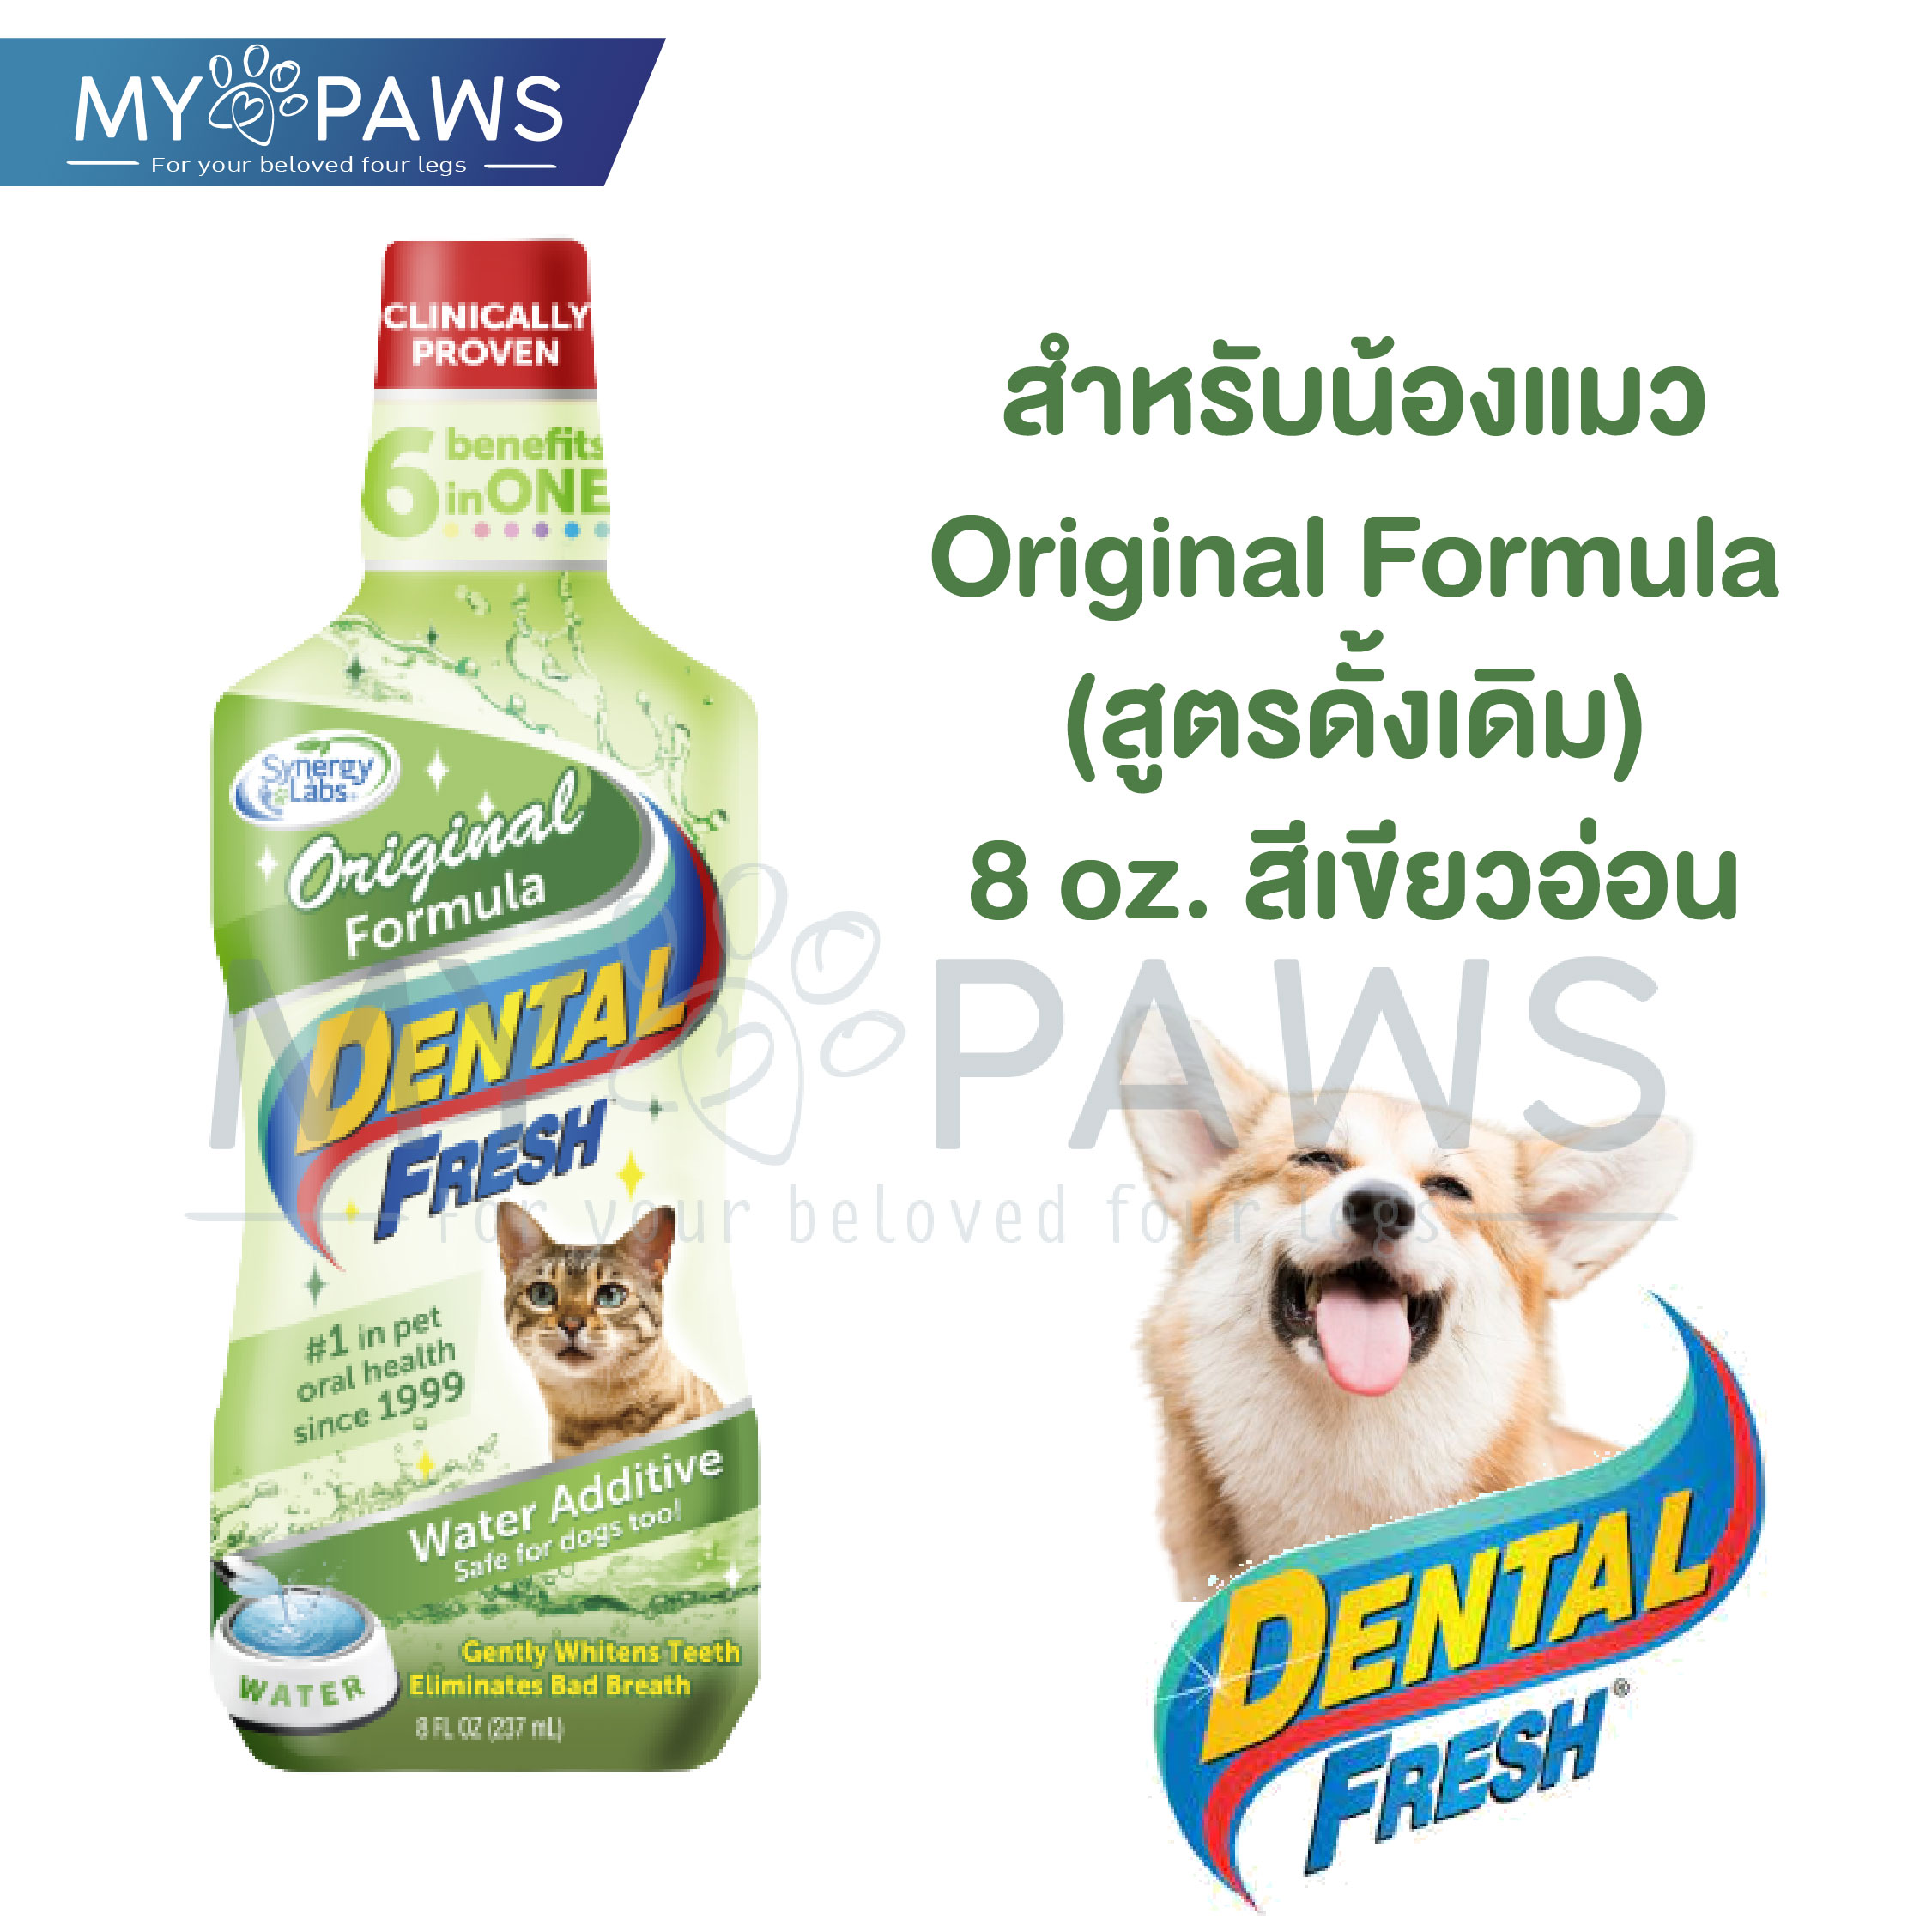 My Paws Dental Fresh - ผลิตภัณฑ์ดูแลสุขภาพในช่องปาก- น้ำยาลดกลิ่นปากสุนัข